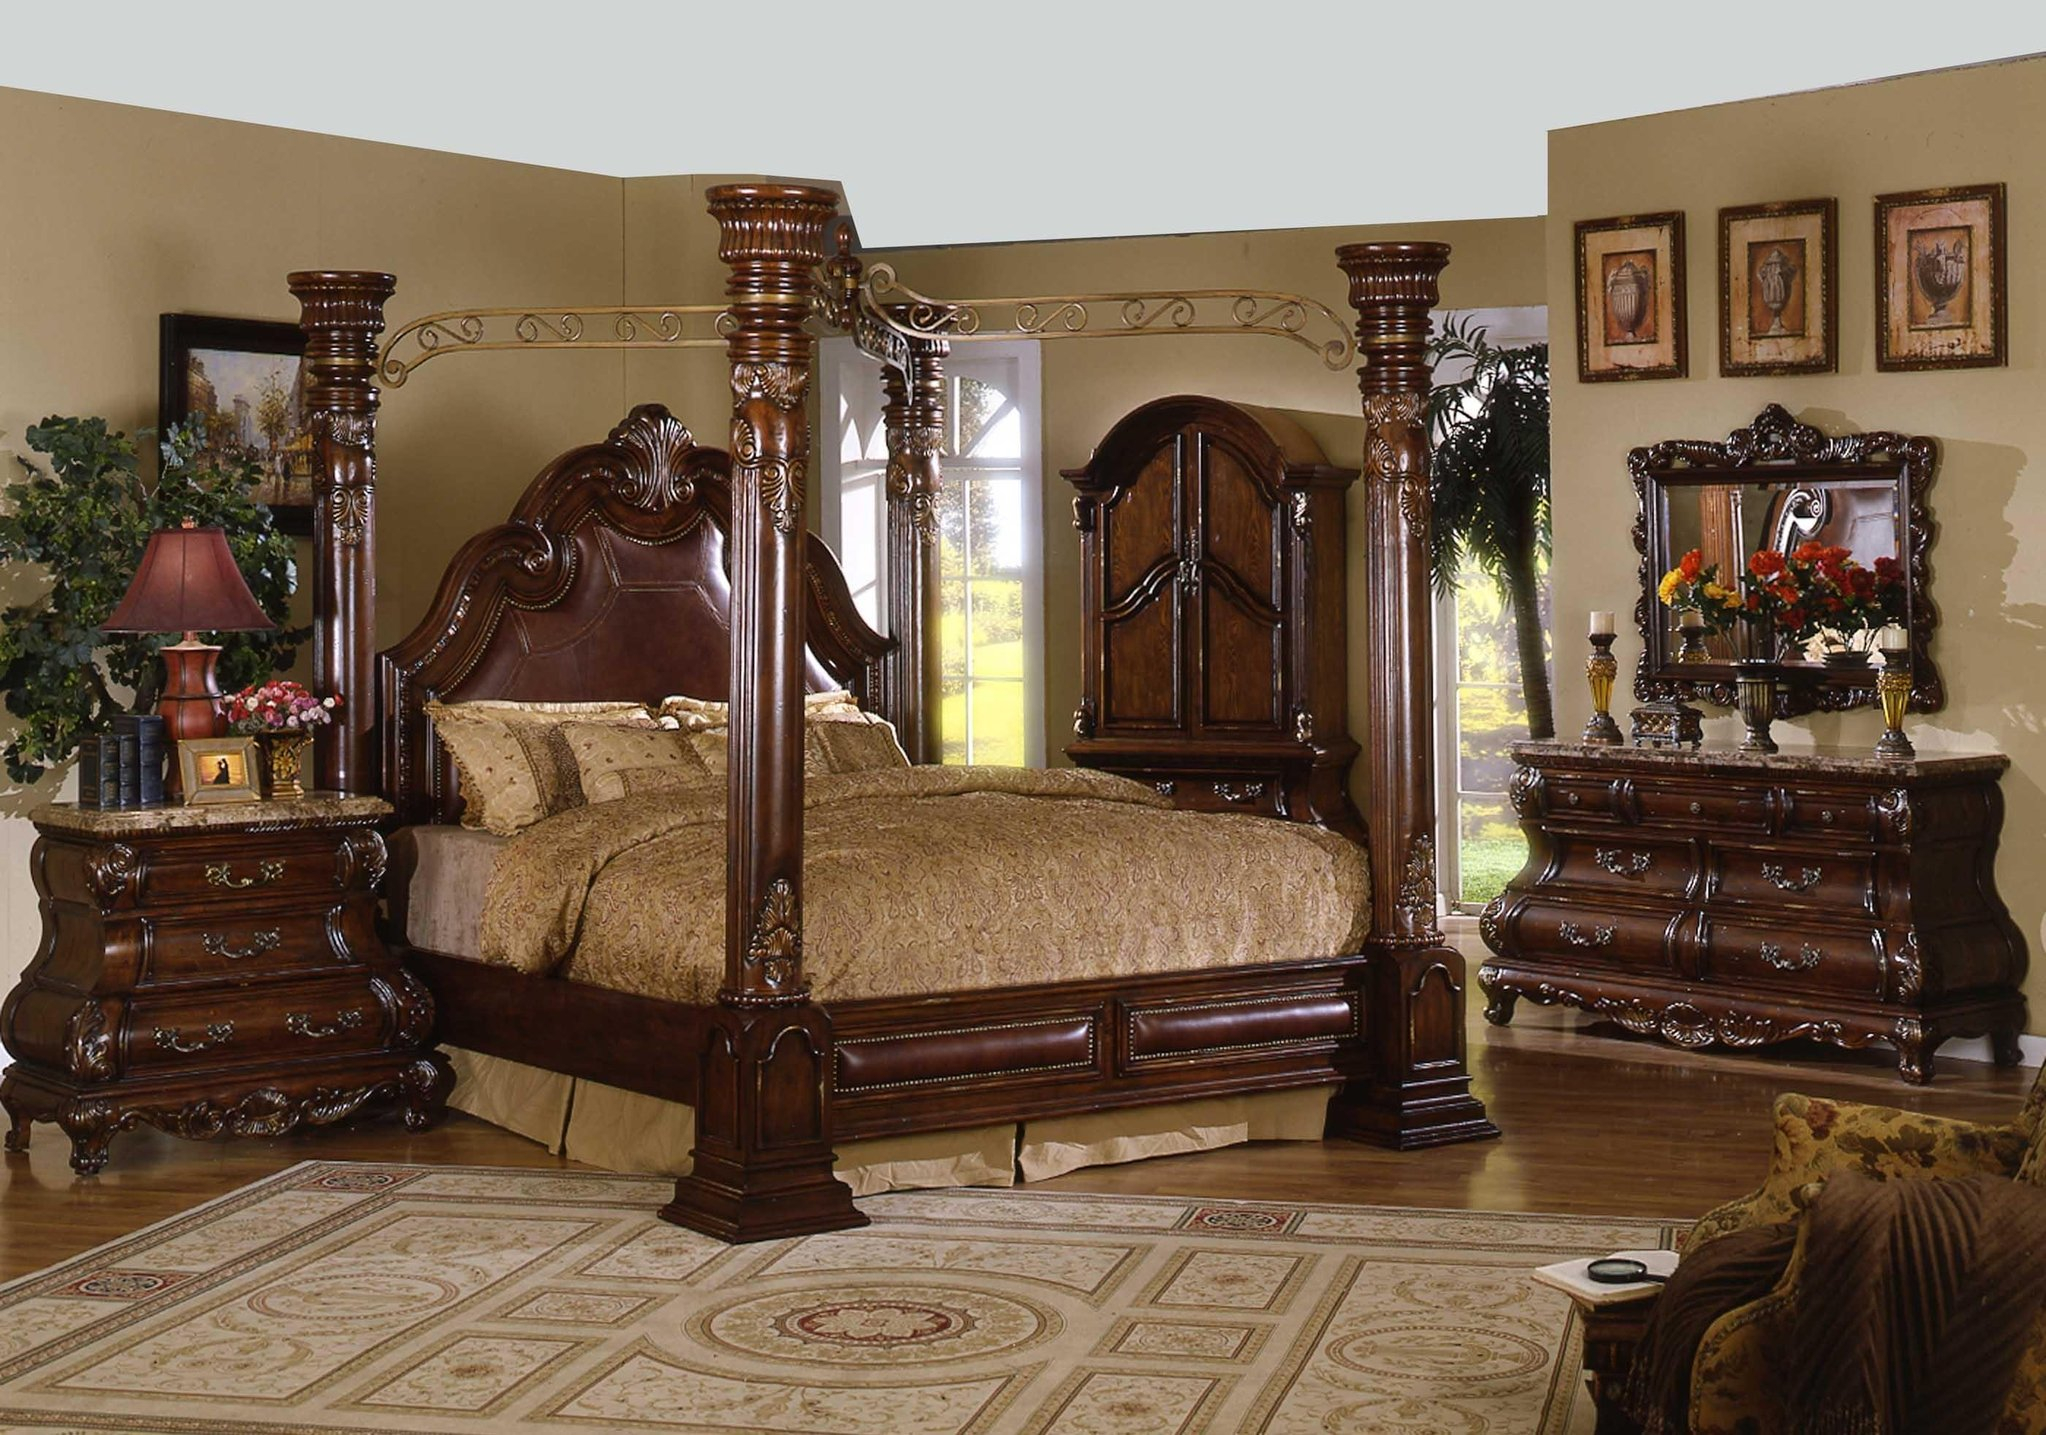 4 post bedroom furniture set